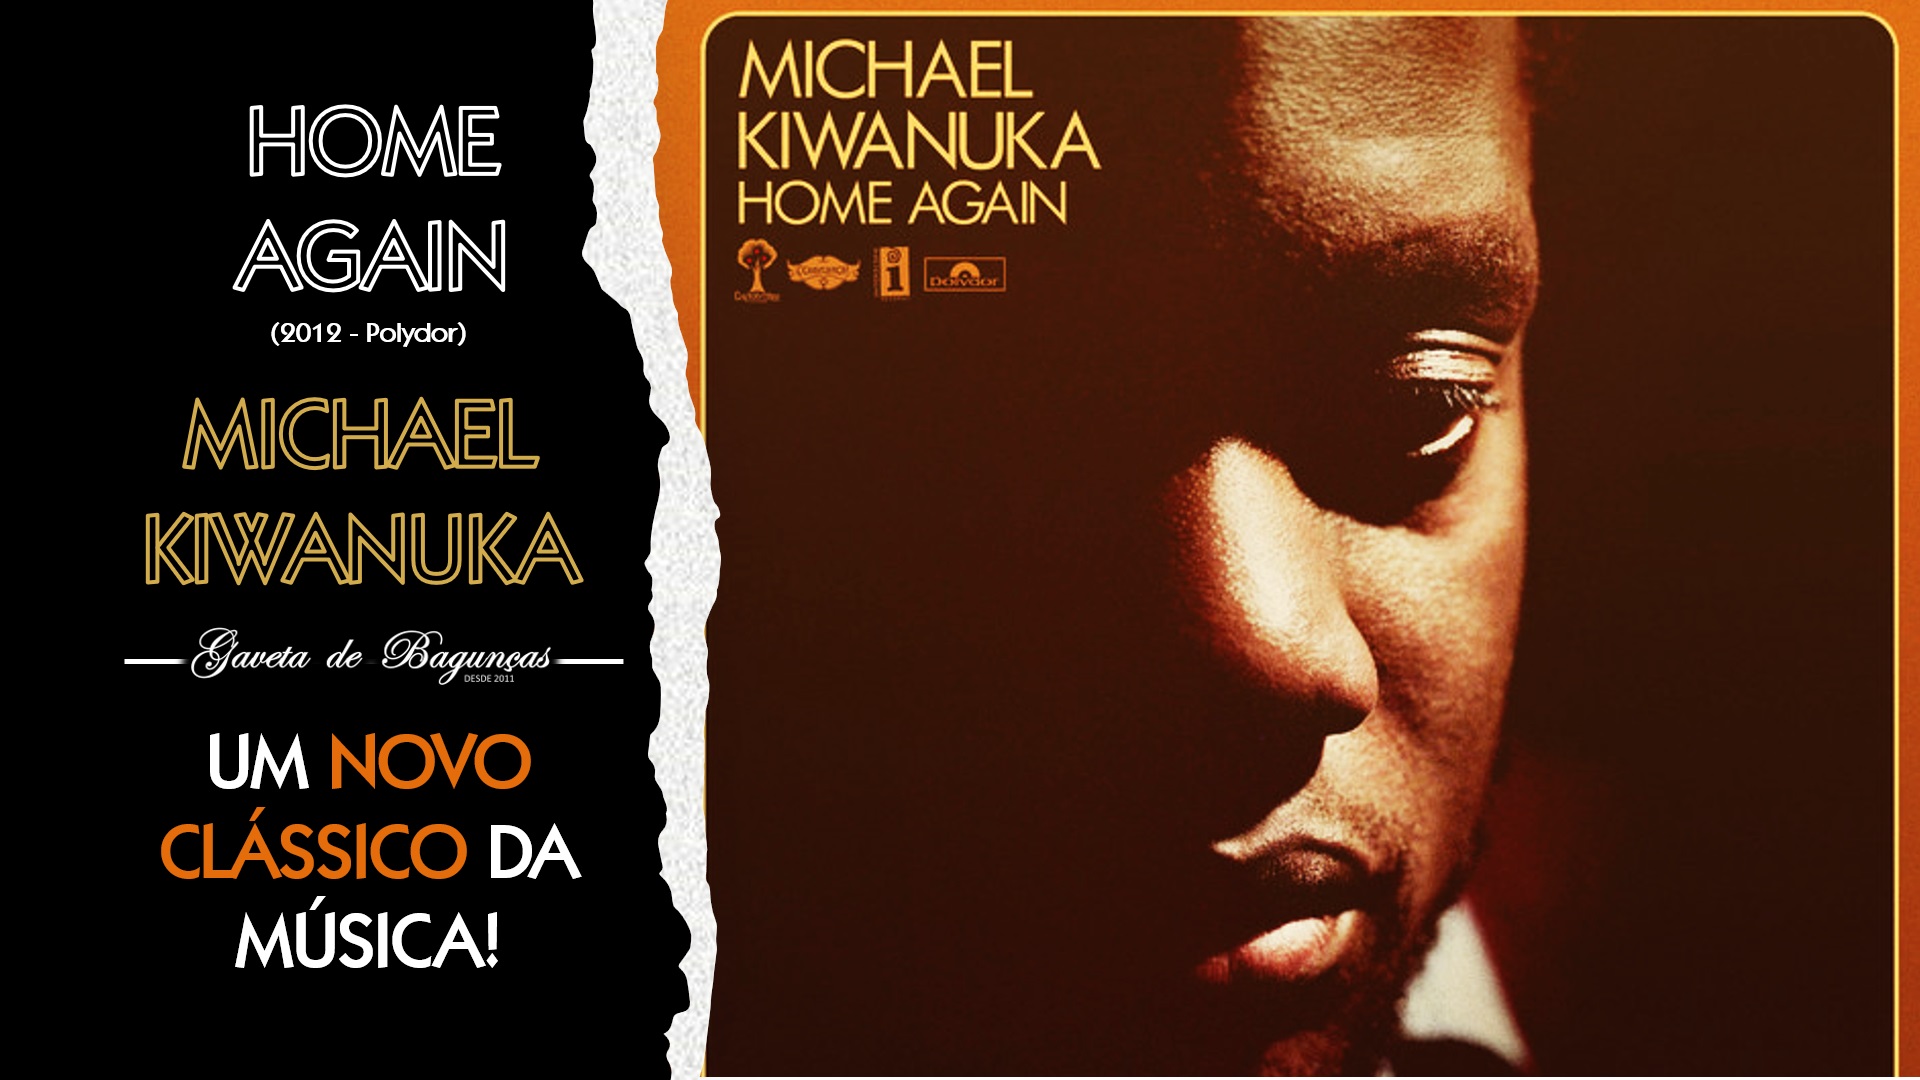 Com sua emoção crua e som atemporal, "Home Again", primeiro disco de Michael Kiwanuka, se tornou um clássico moderno. Descubra por que este álbum é o favorito dos fãs e pode se tornar o seu também!